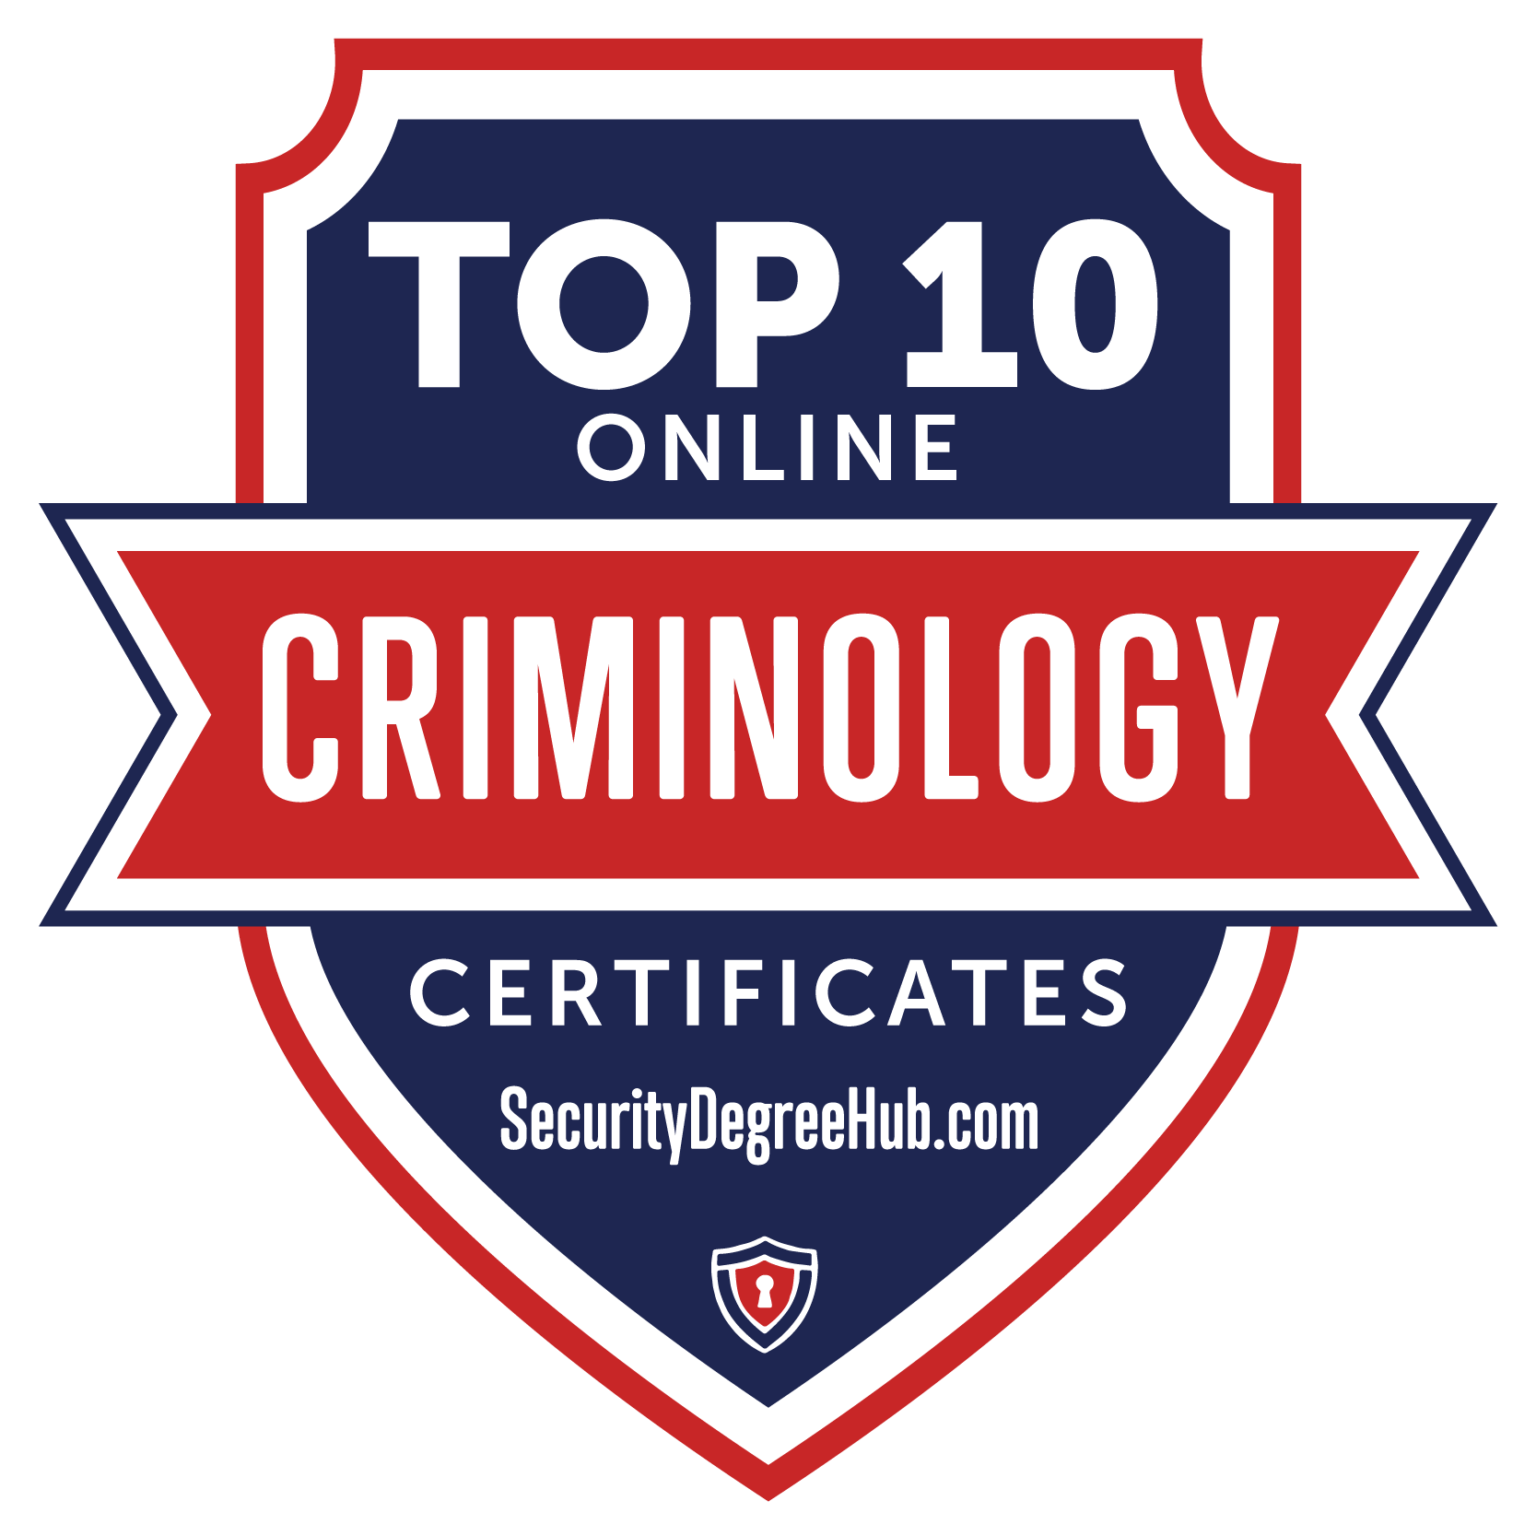 SDH Top 10 Online Criminology Certificates 01 1536x1536 